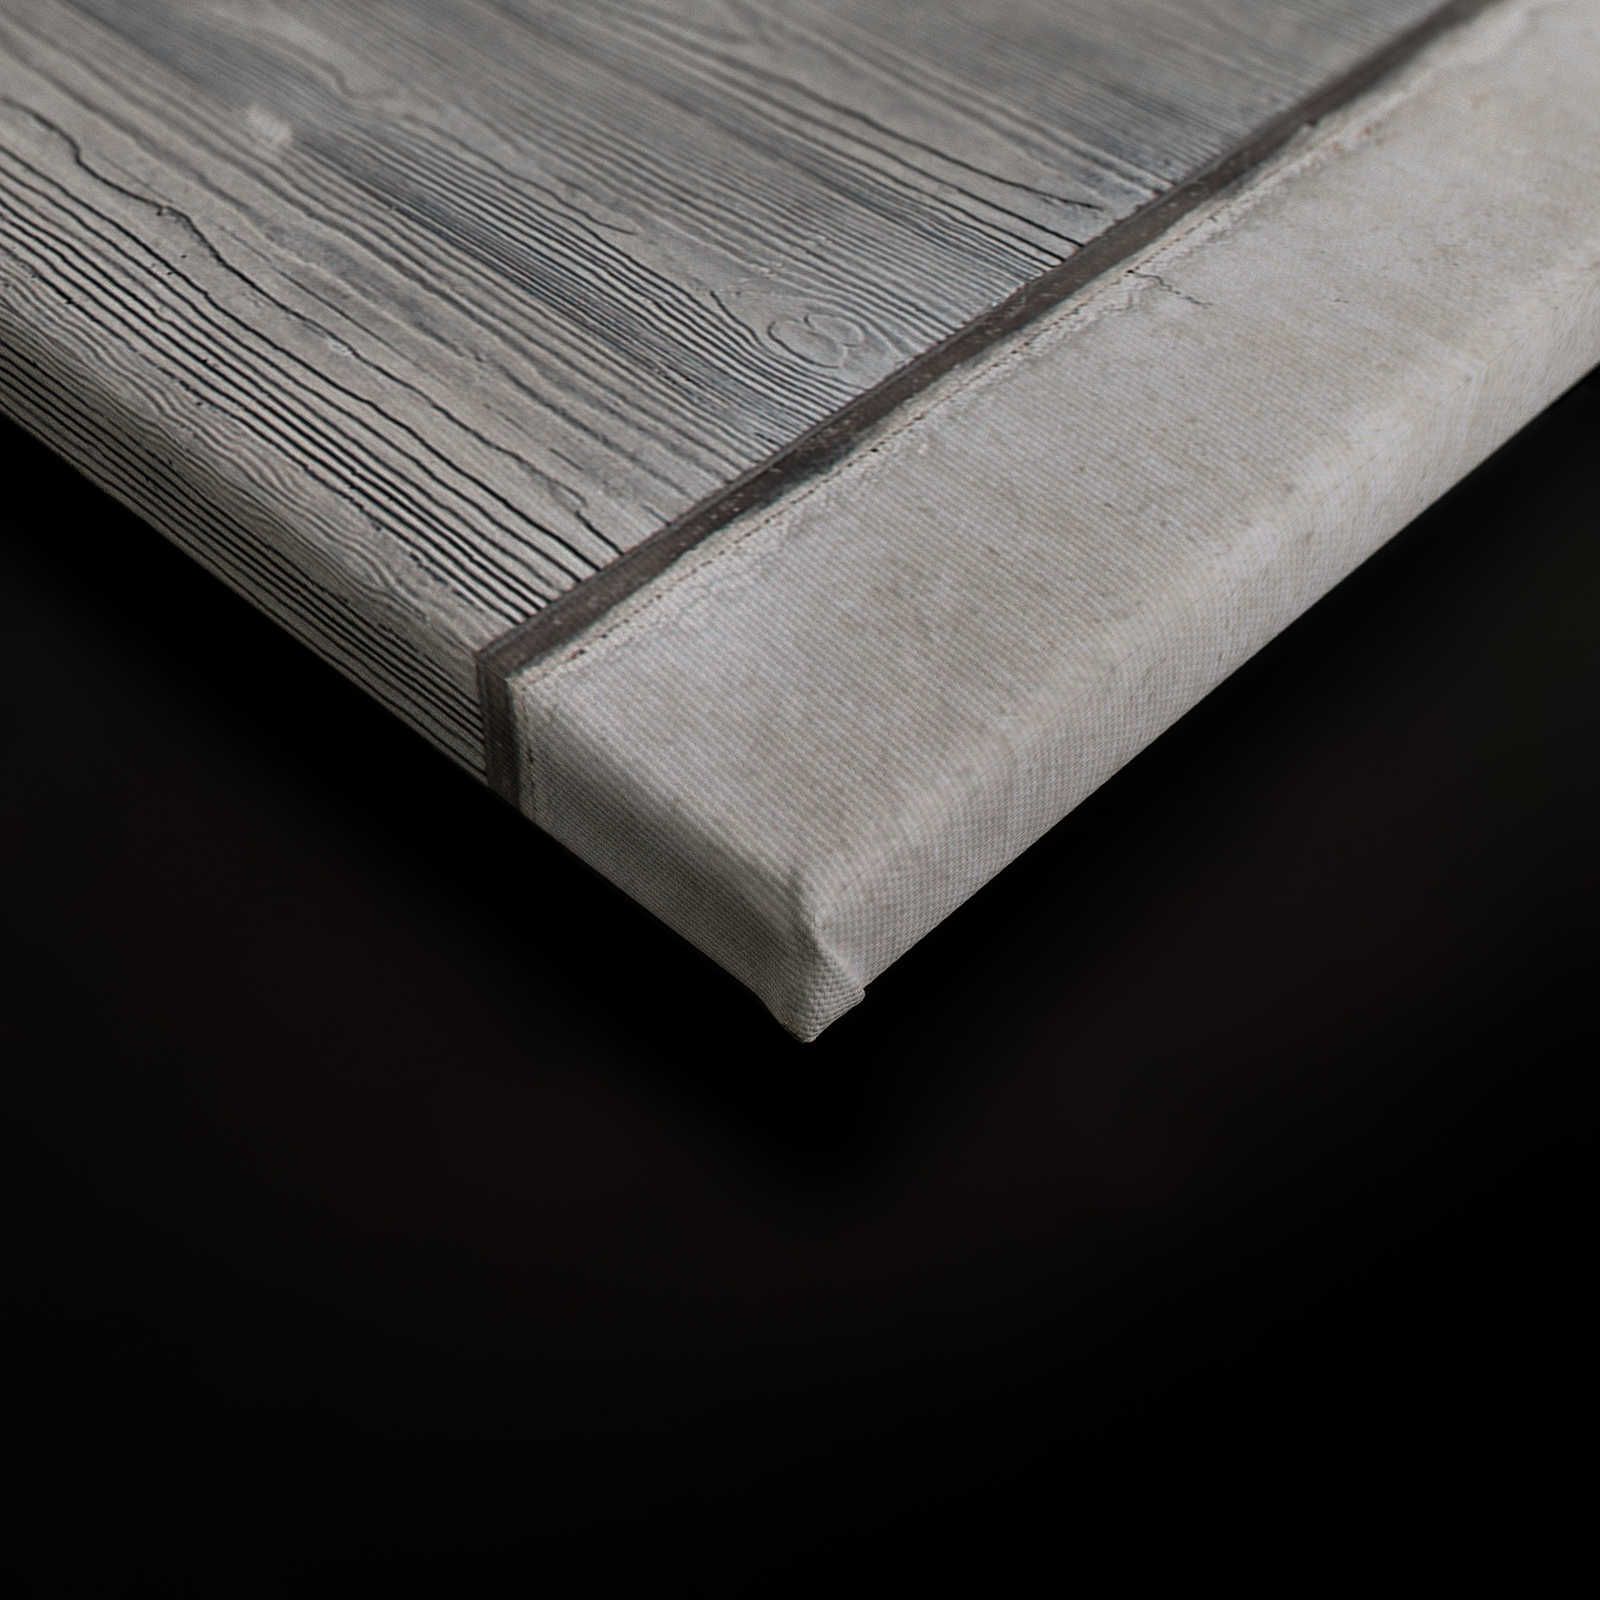             Betonplatten Leinwandbild mit Bretterschalung und Holzmaserung – 0,90 m x 0,60 m
        